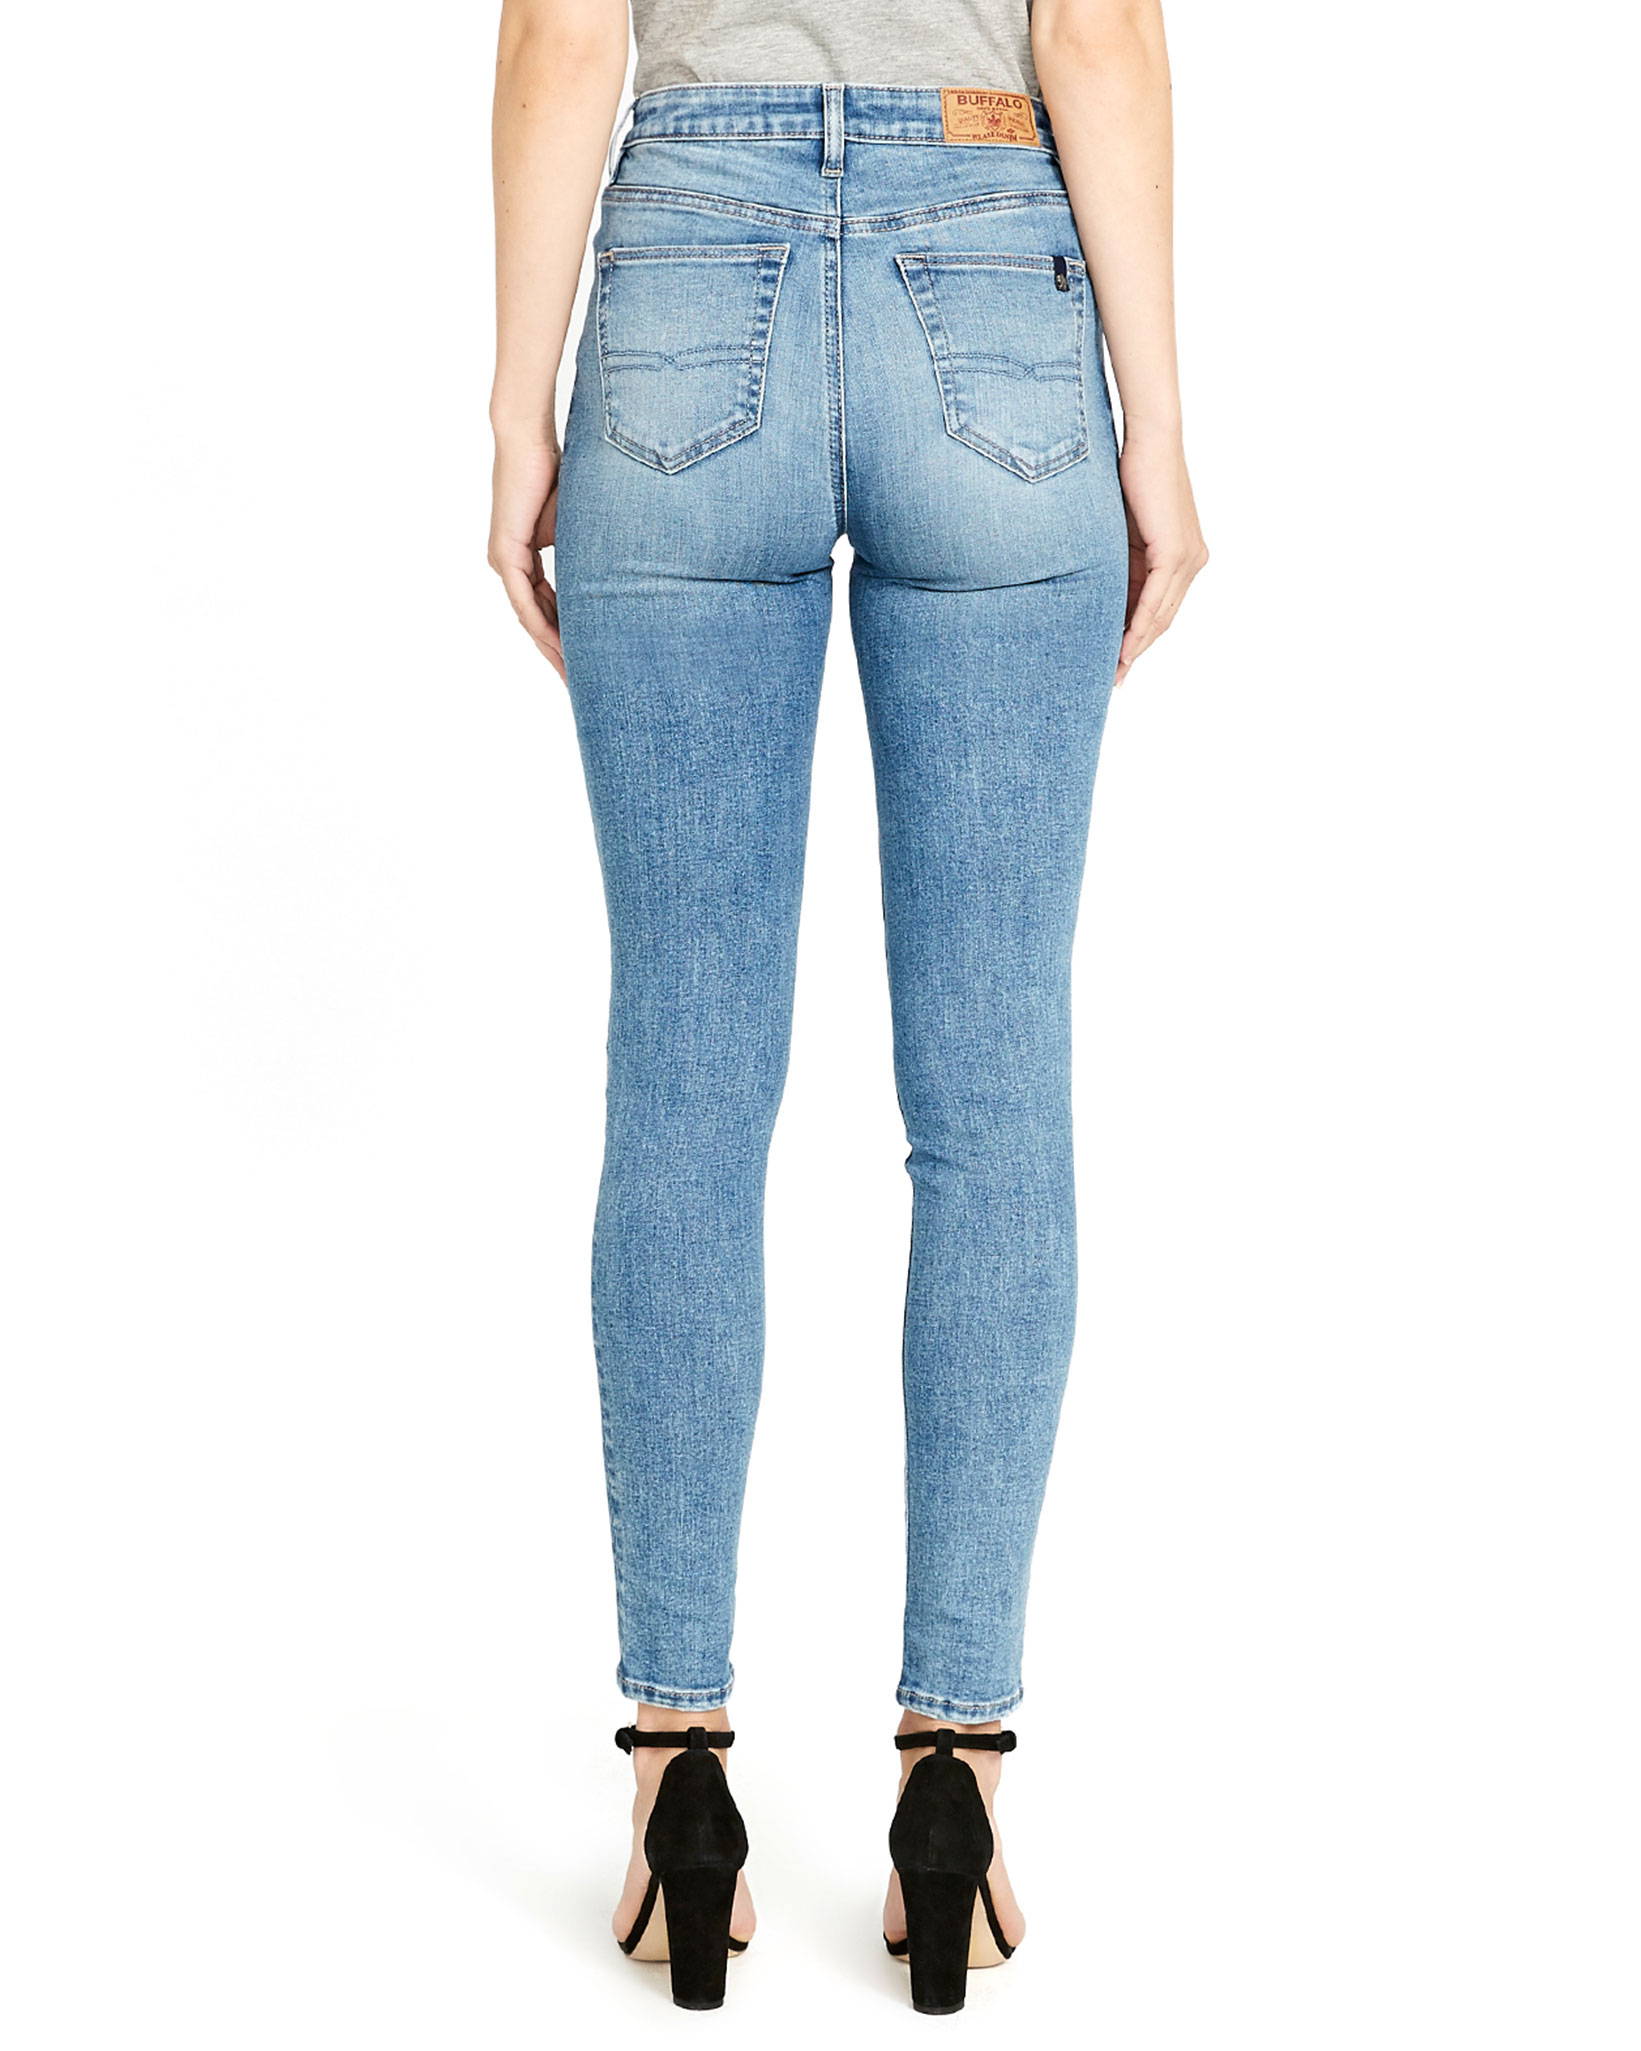 Shop Women's Jeans